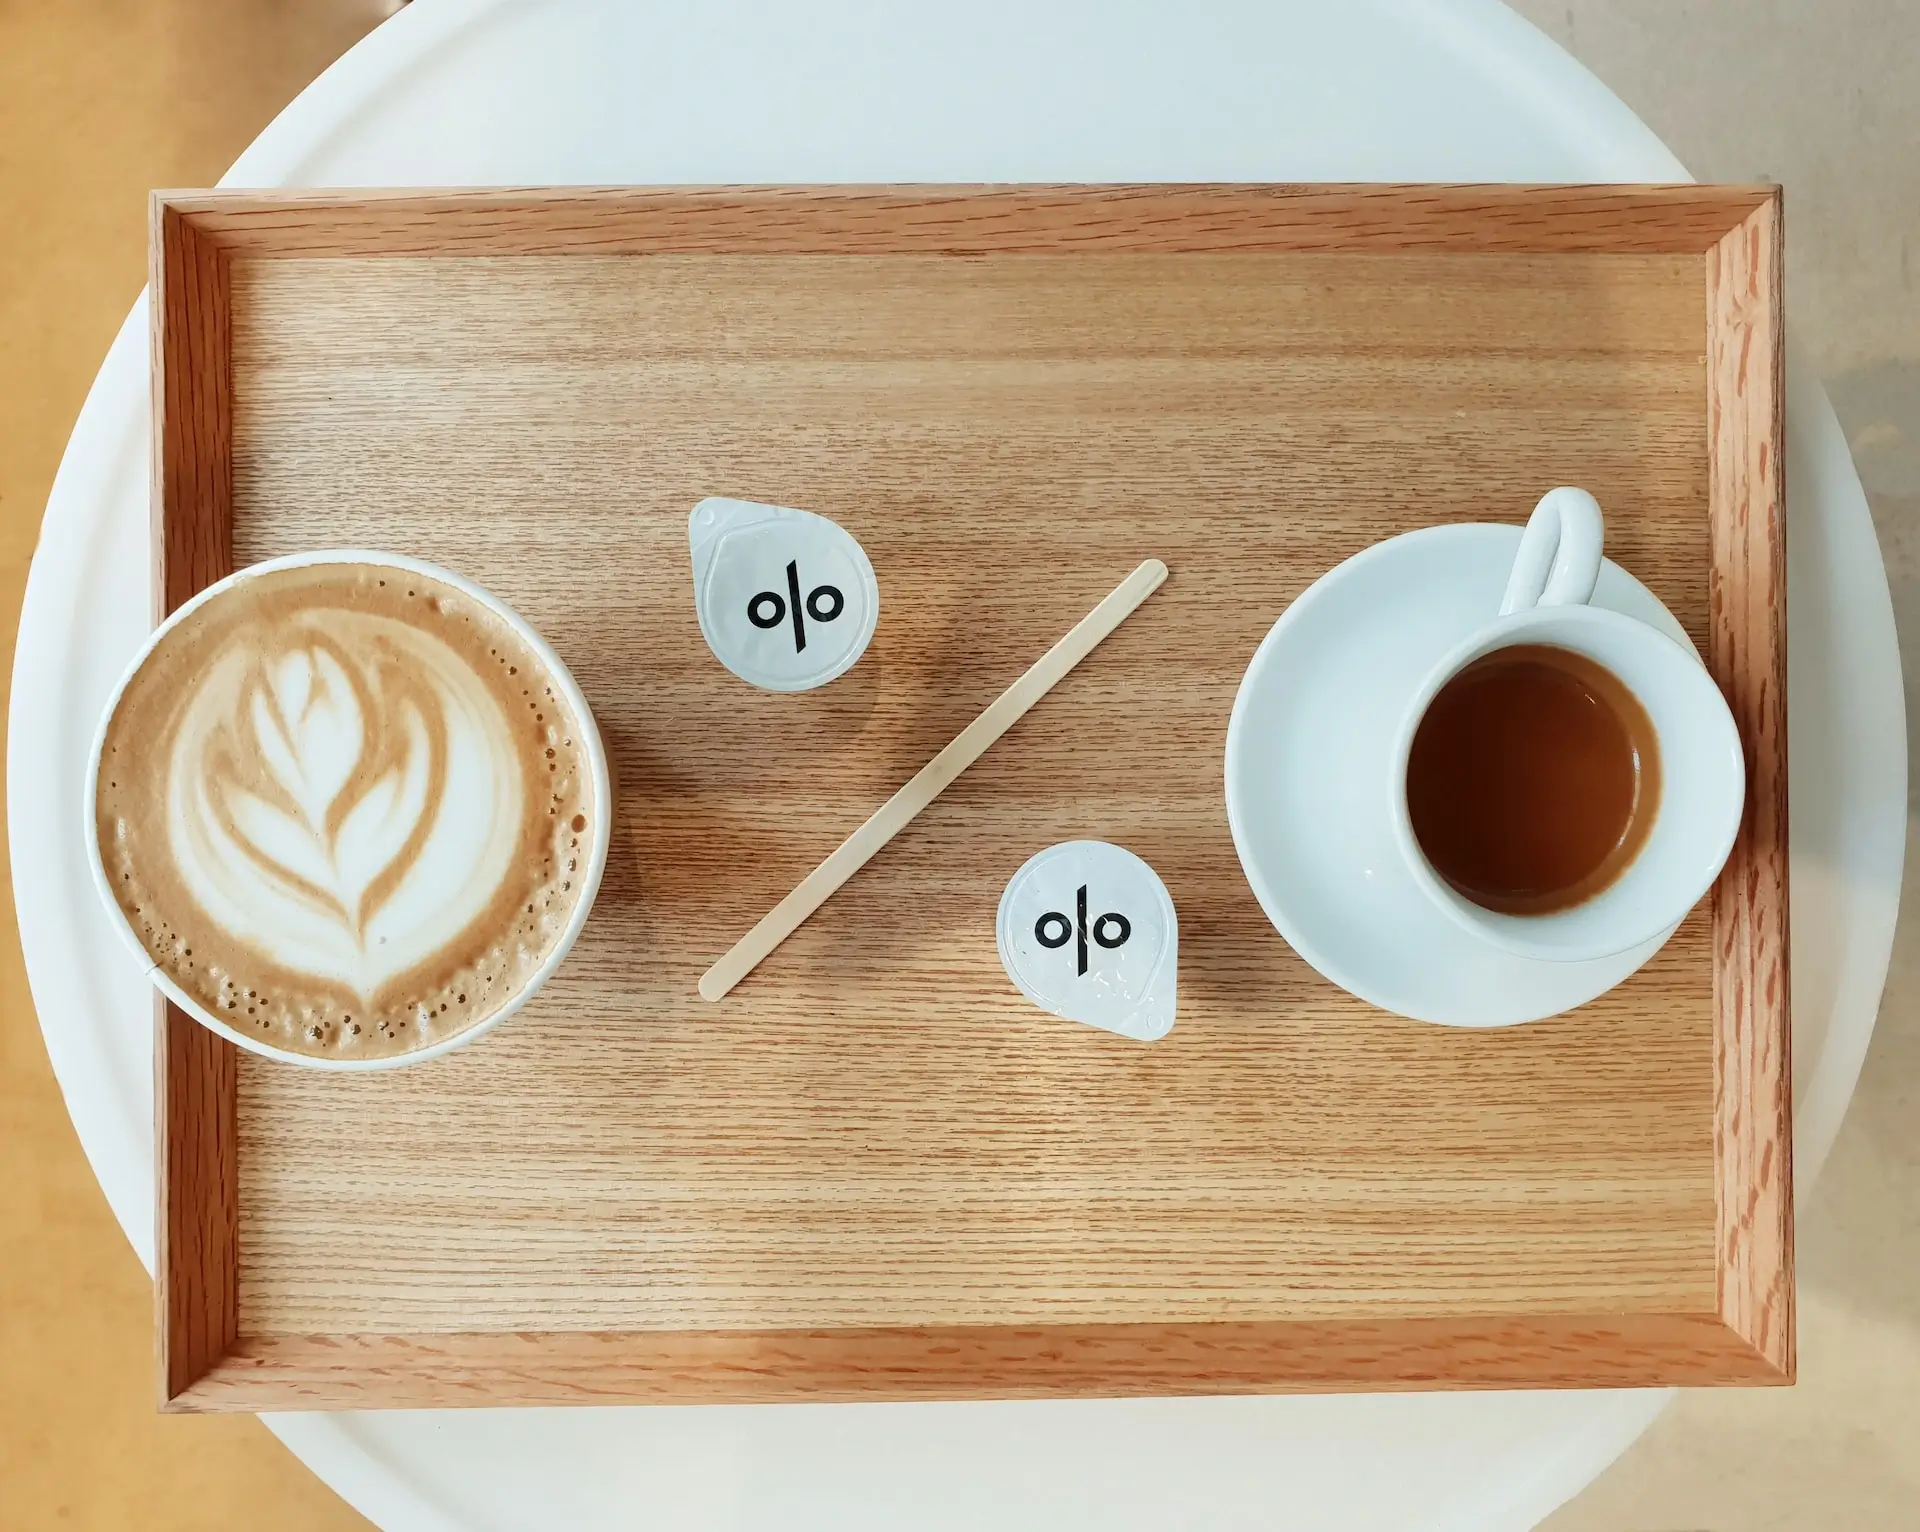 Drewniana taca z ceramiczną filiżanką espresso i latte, dwiema paczkami cukru i drewnianymi mieszadełkami. Całość układa się w kształt znaku procenta.